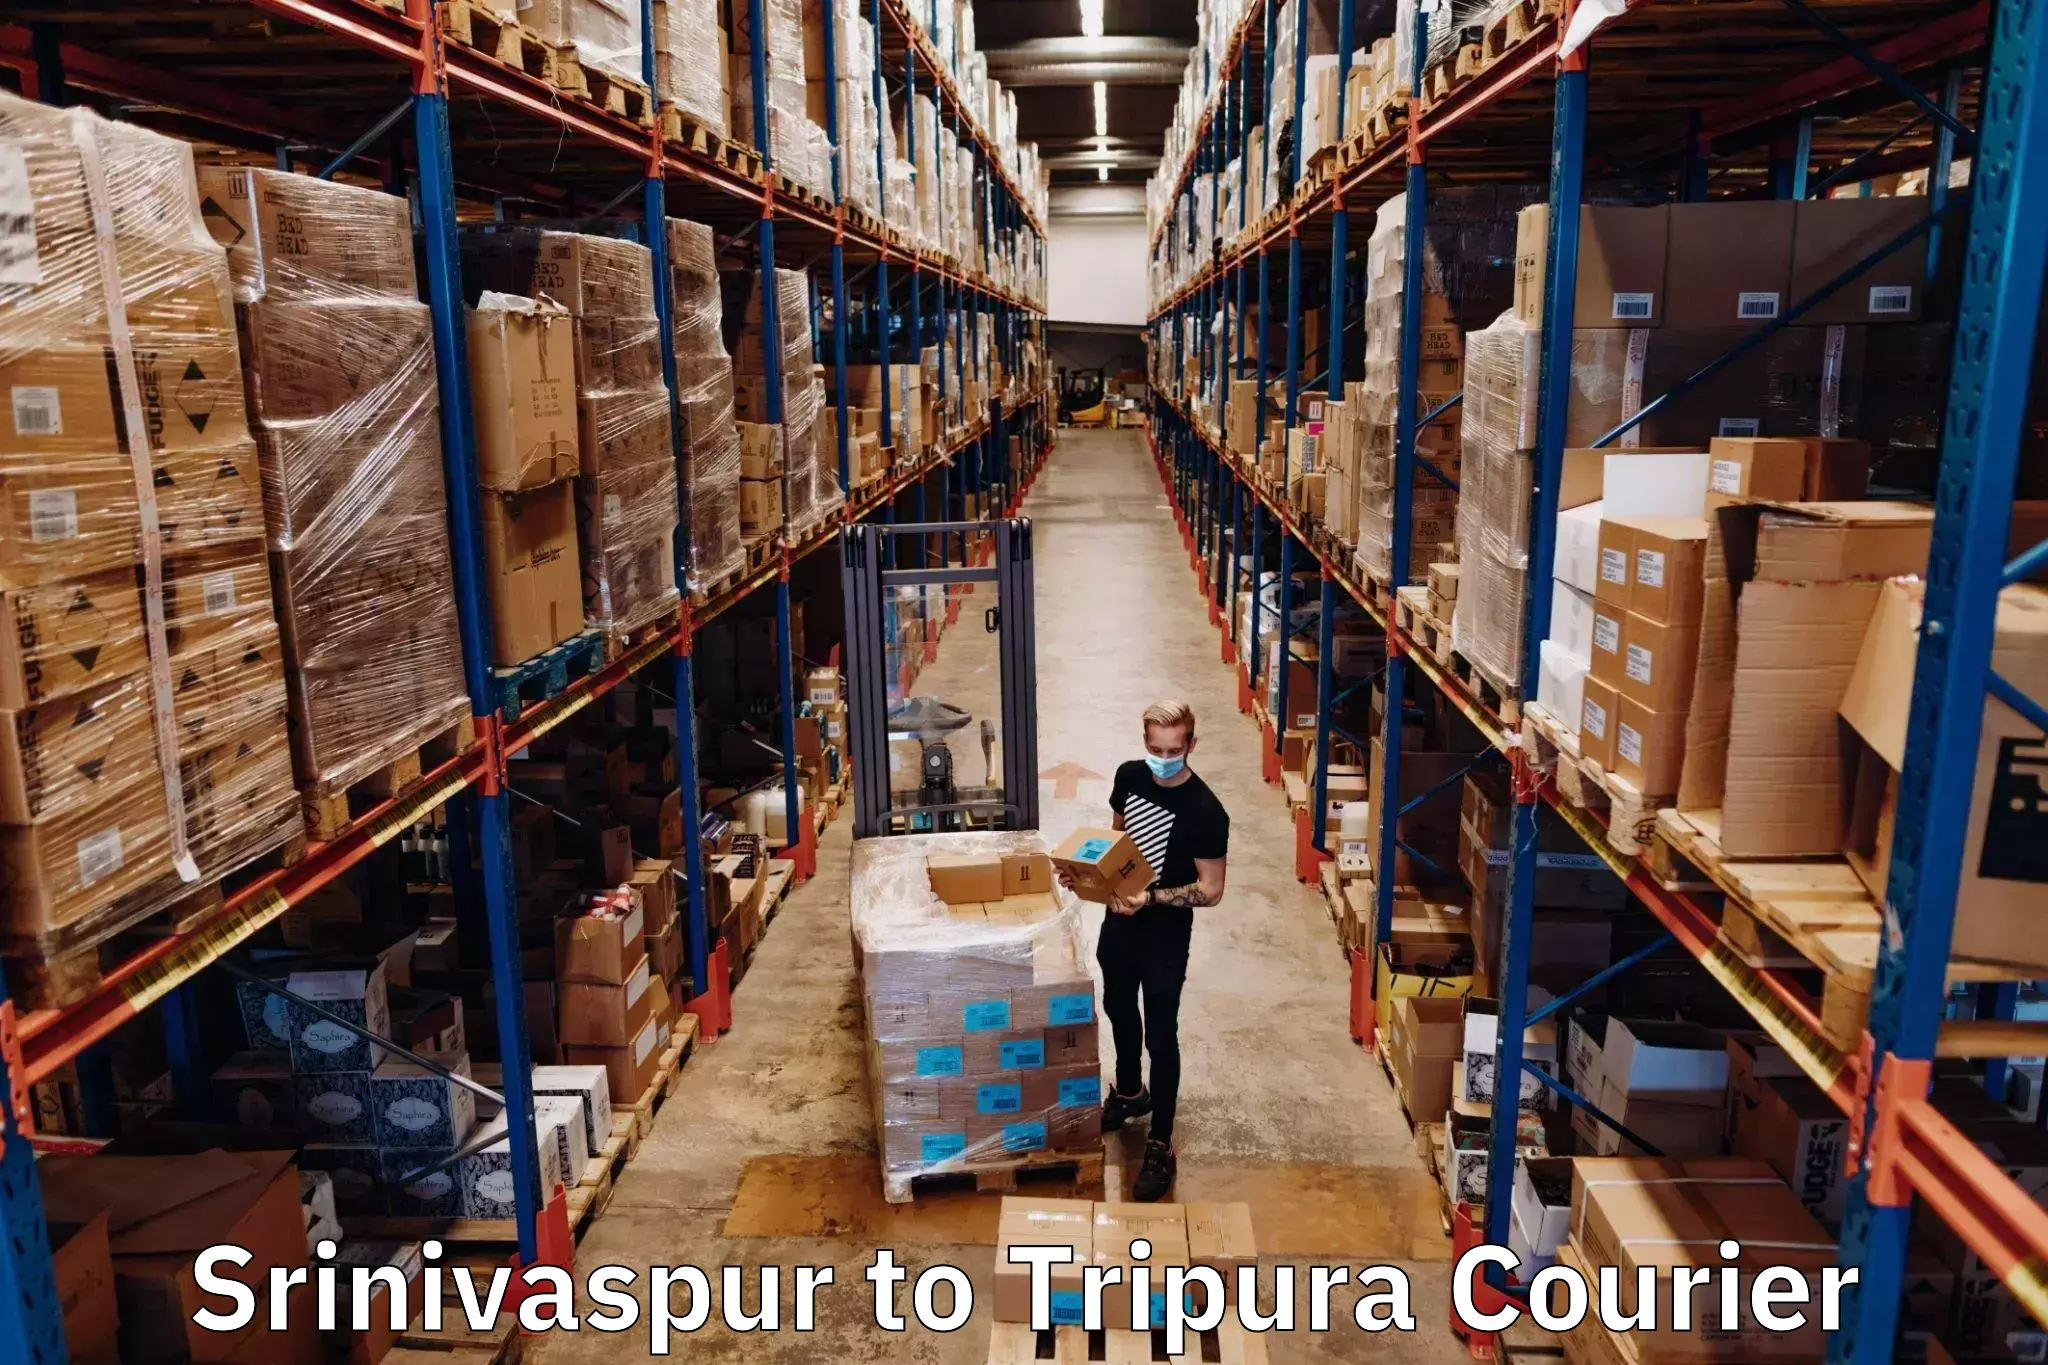 Premium courier services Srinivaspur to Udaipur Tripura